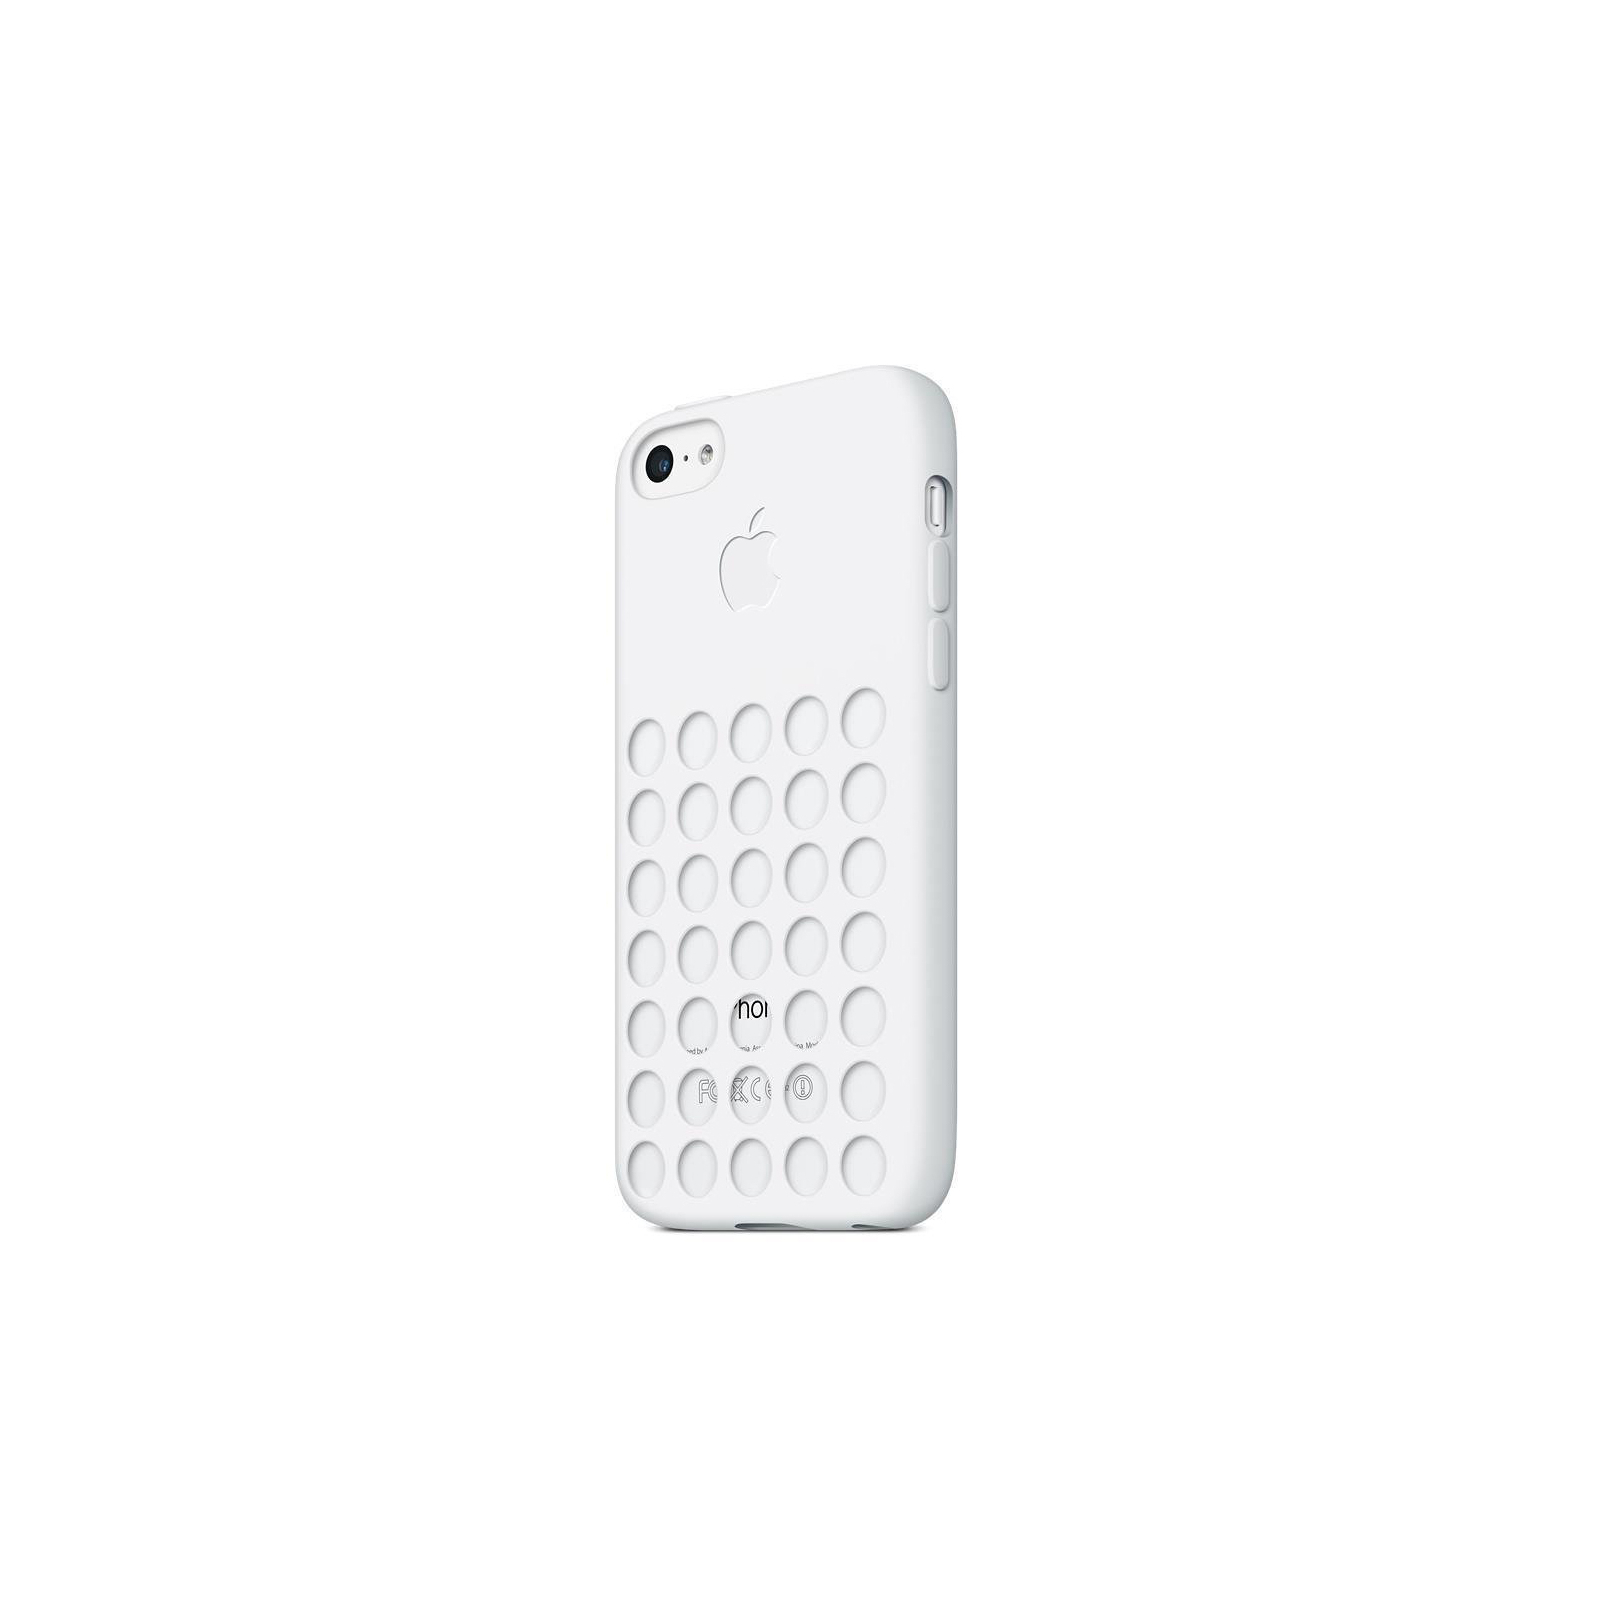 Чехол для мобильного телефона Apple для iPhone 5c white (MF039ZM/A) изображение 2